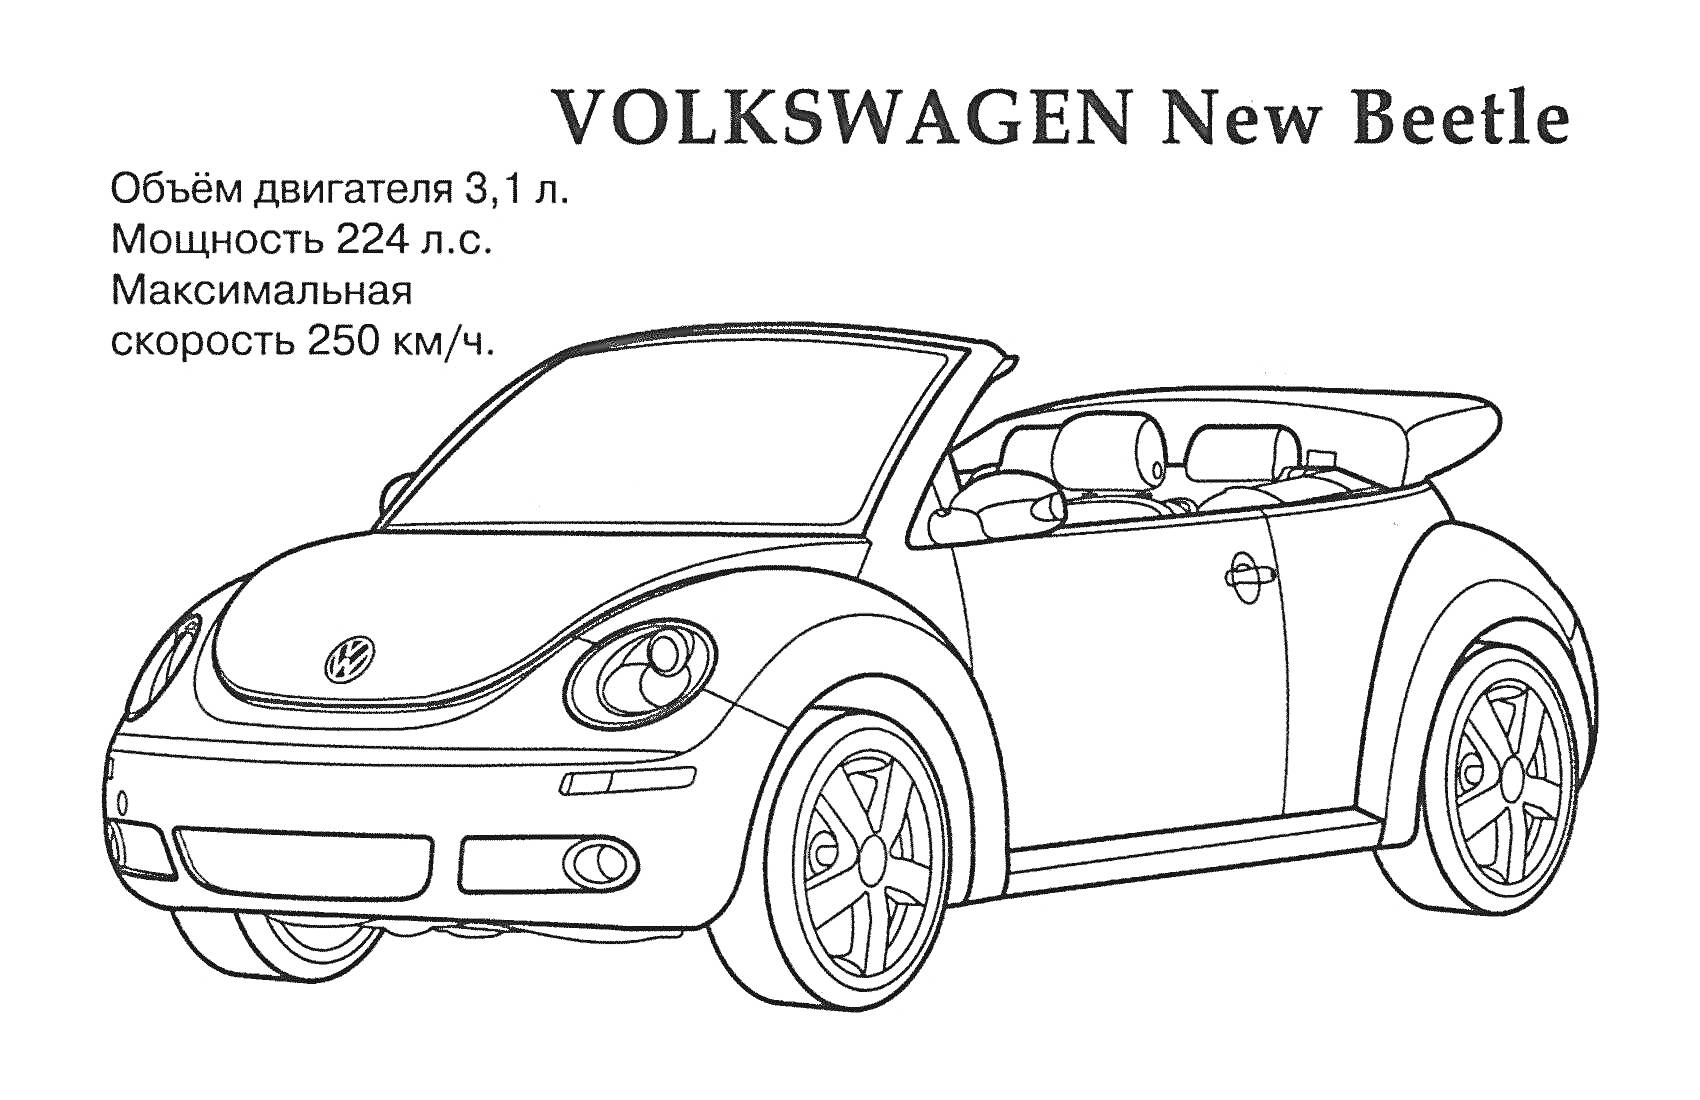 Раскраска VOLKSWAGEN New Beetle с указанием характеристик (объем двигателя 3,1 л, мощность 224 л.с., максимальная скорость 250 км/ч)